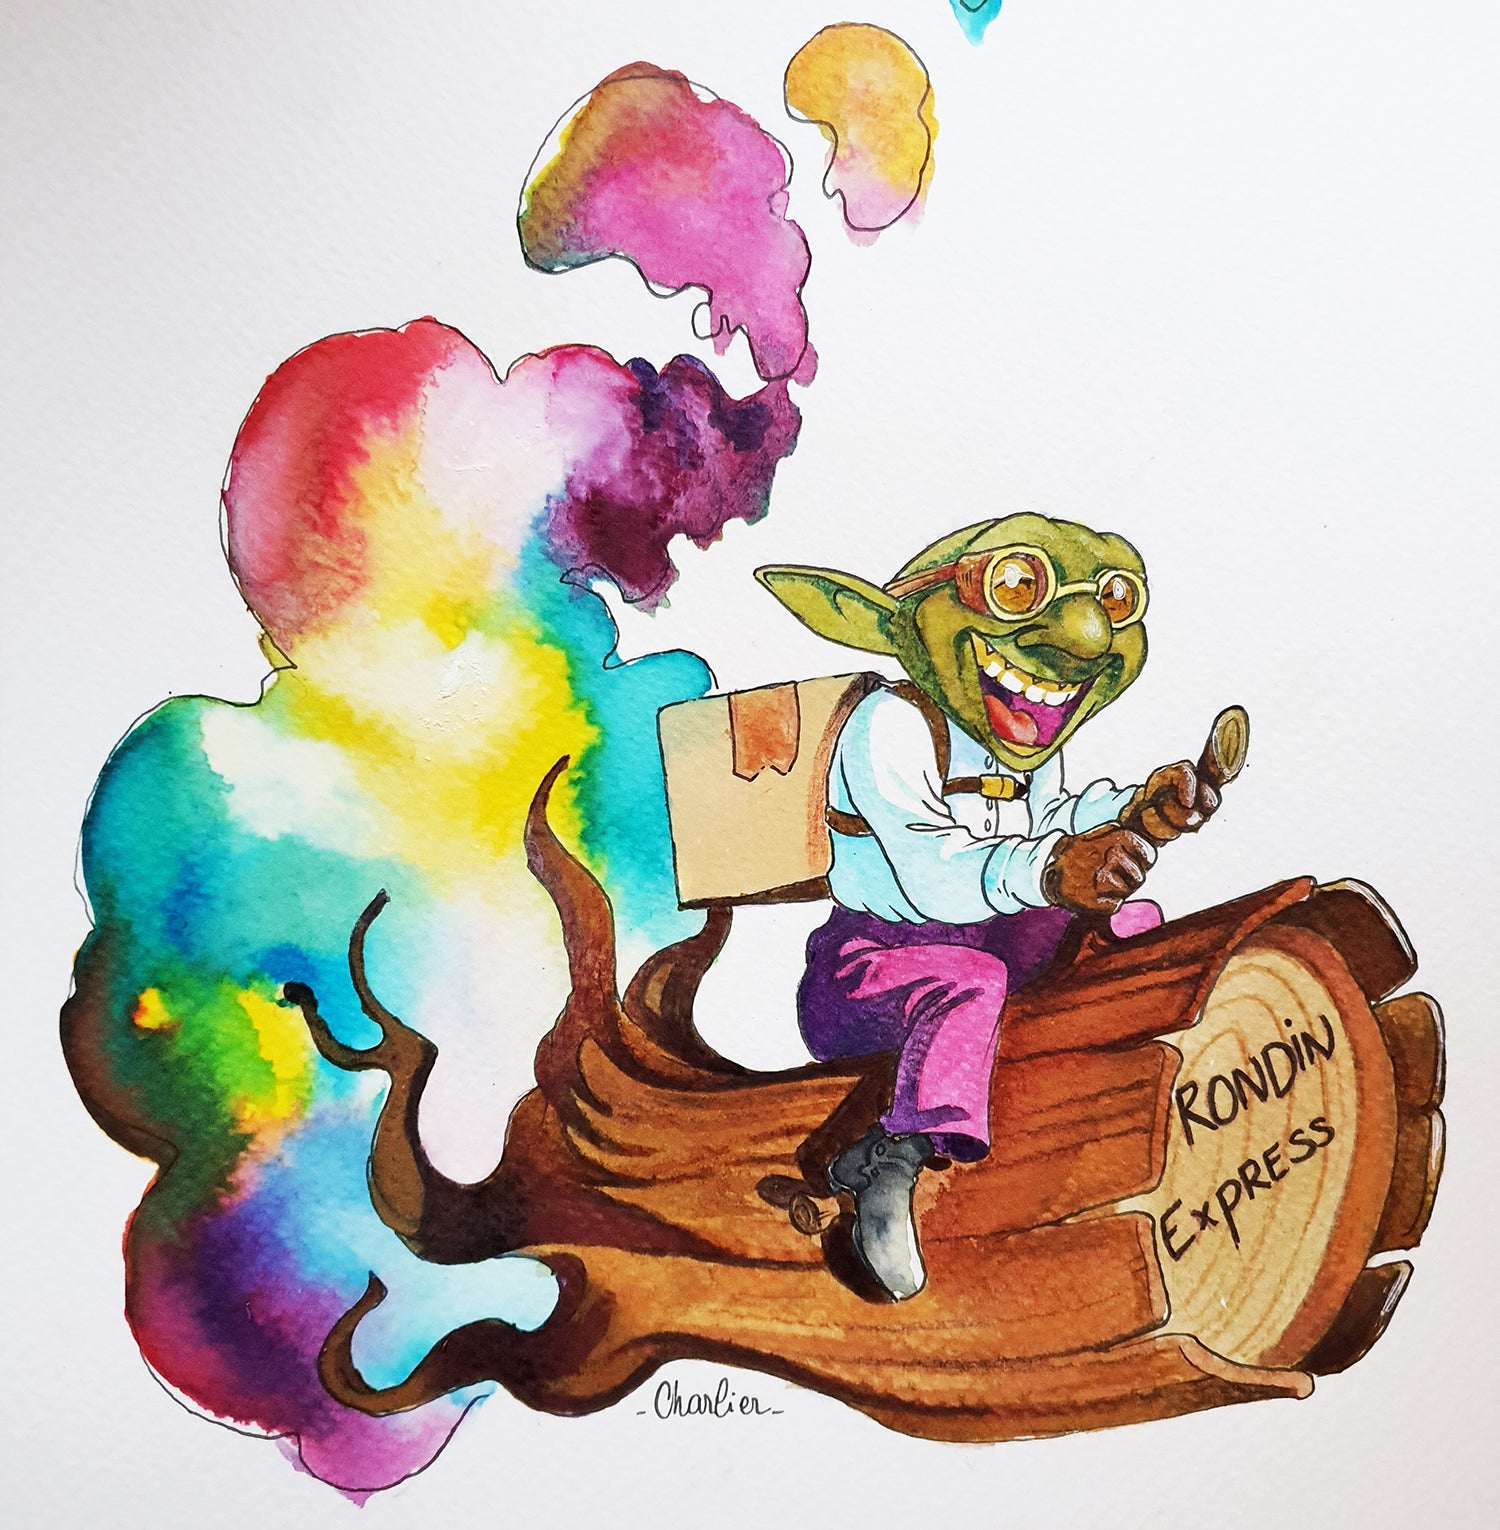 Elfe livreur Rondin Express avec un colis sur le dos et un nuage de fumée multicolore oeuvre de julien charlier